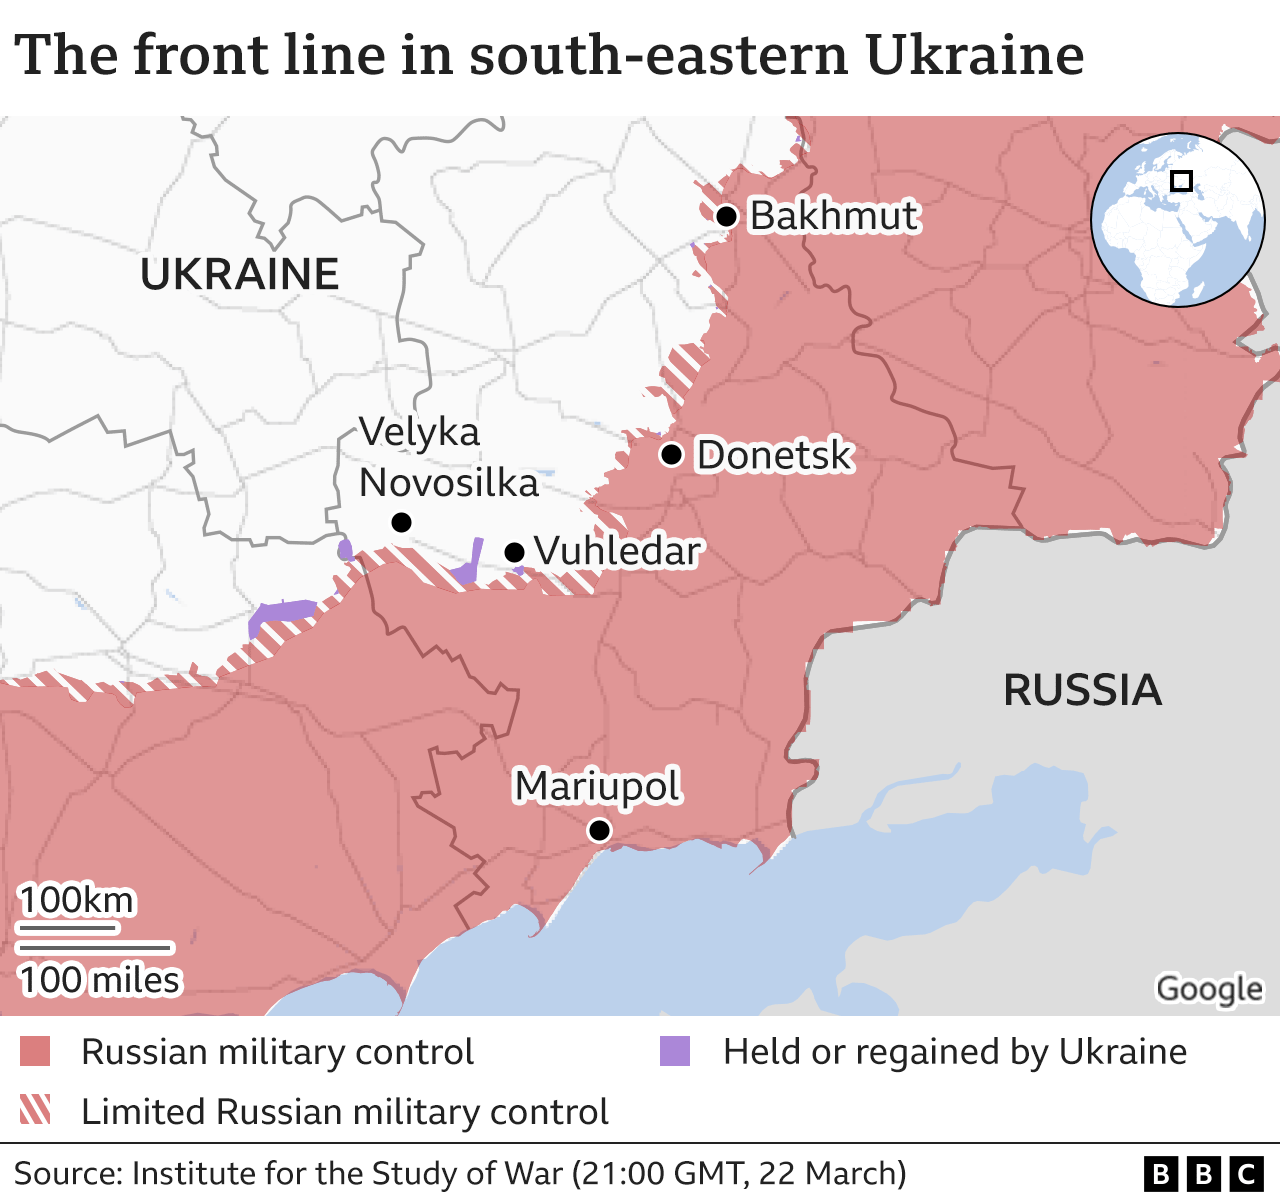 Карта линии фронта на юго-востоке Украины - показывает районы, находящиеся под контролем российских военных, и несколько мест, включая Донецк и Мариуполь.